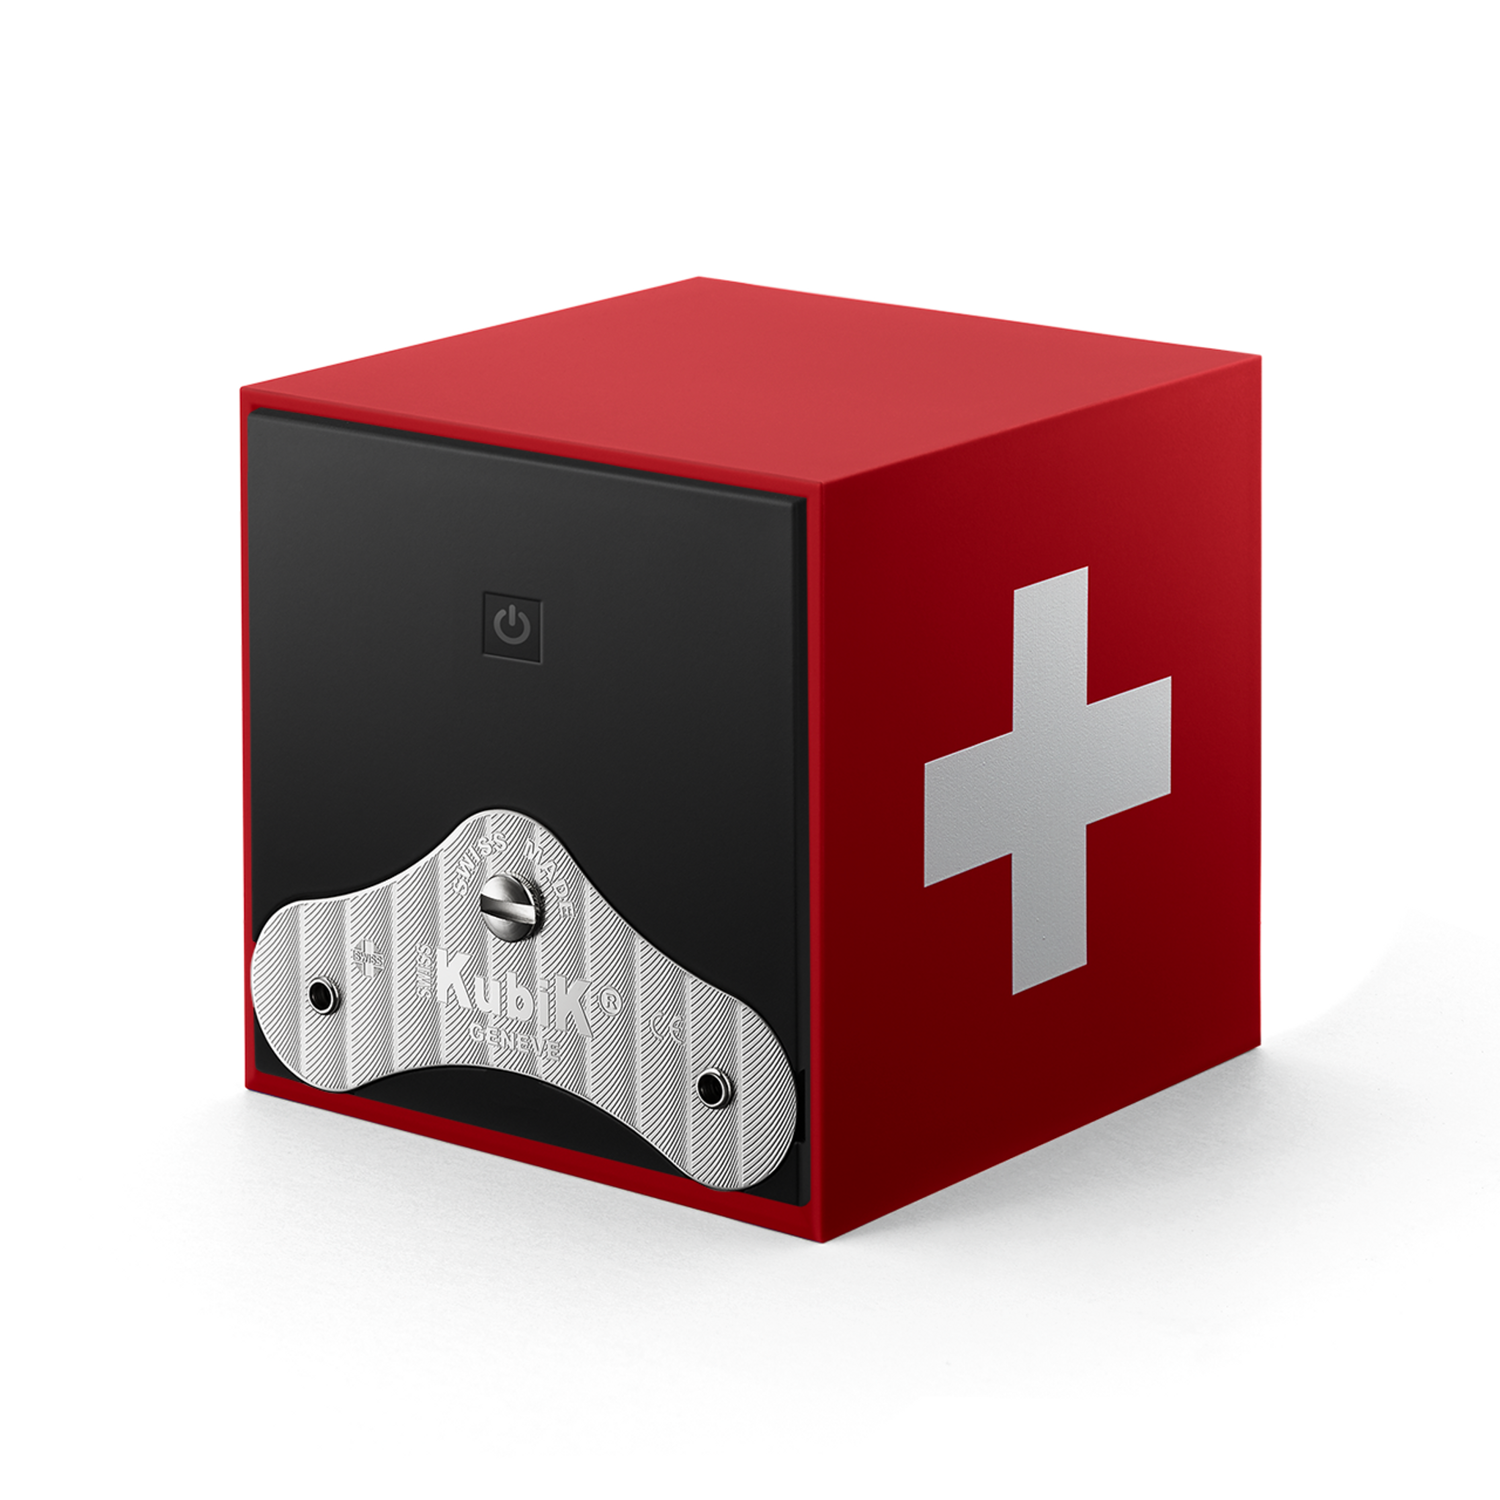 Swiss Kubik Startbox Swiss Edition